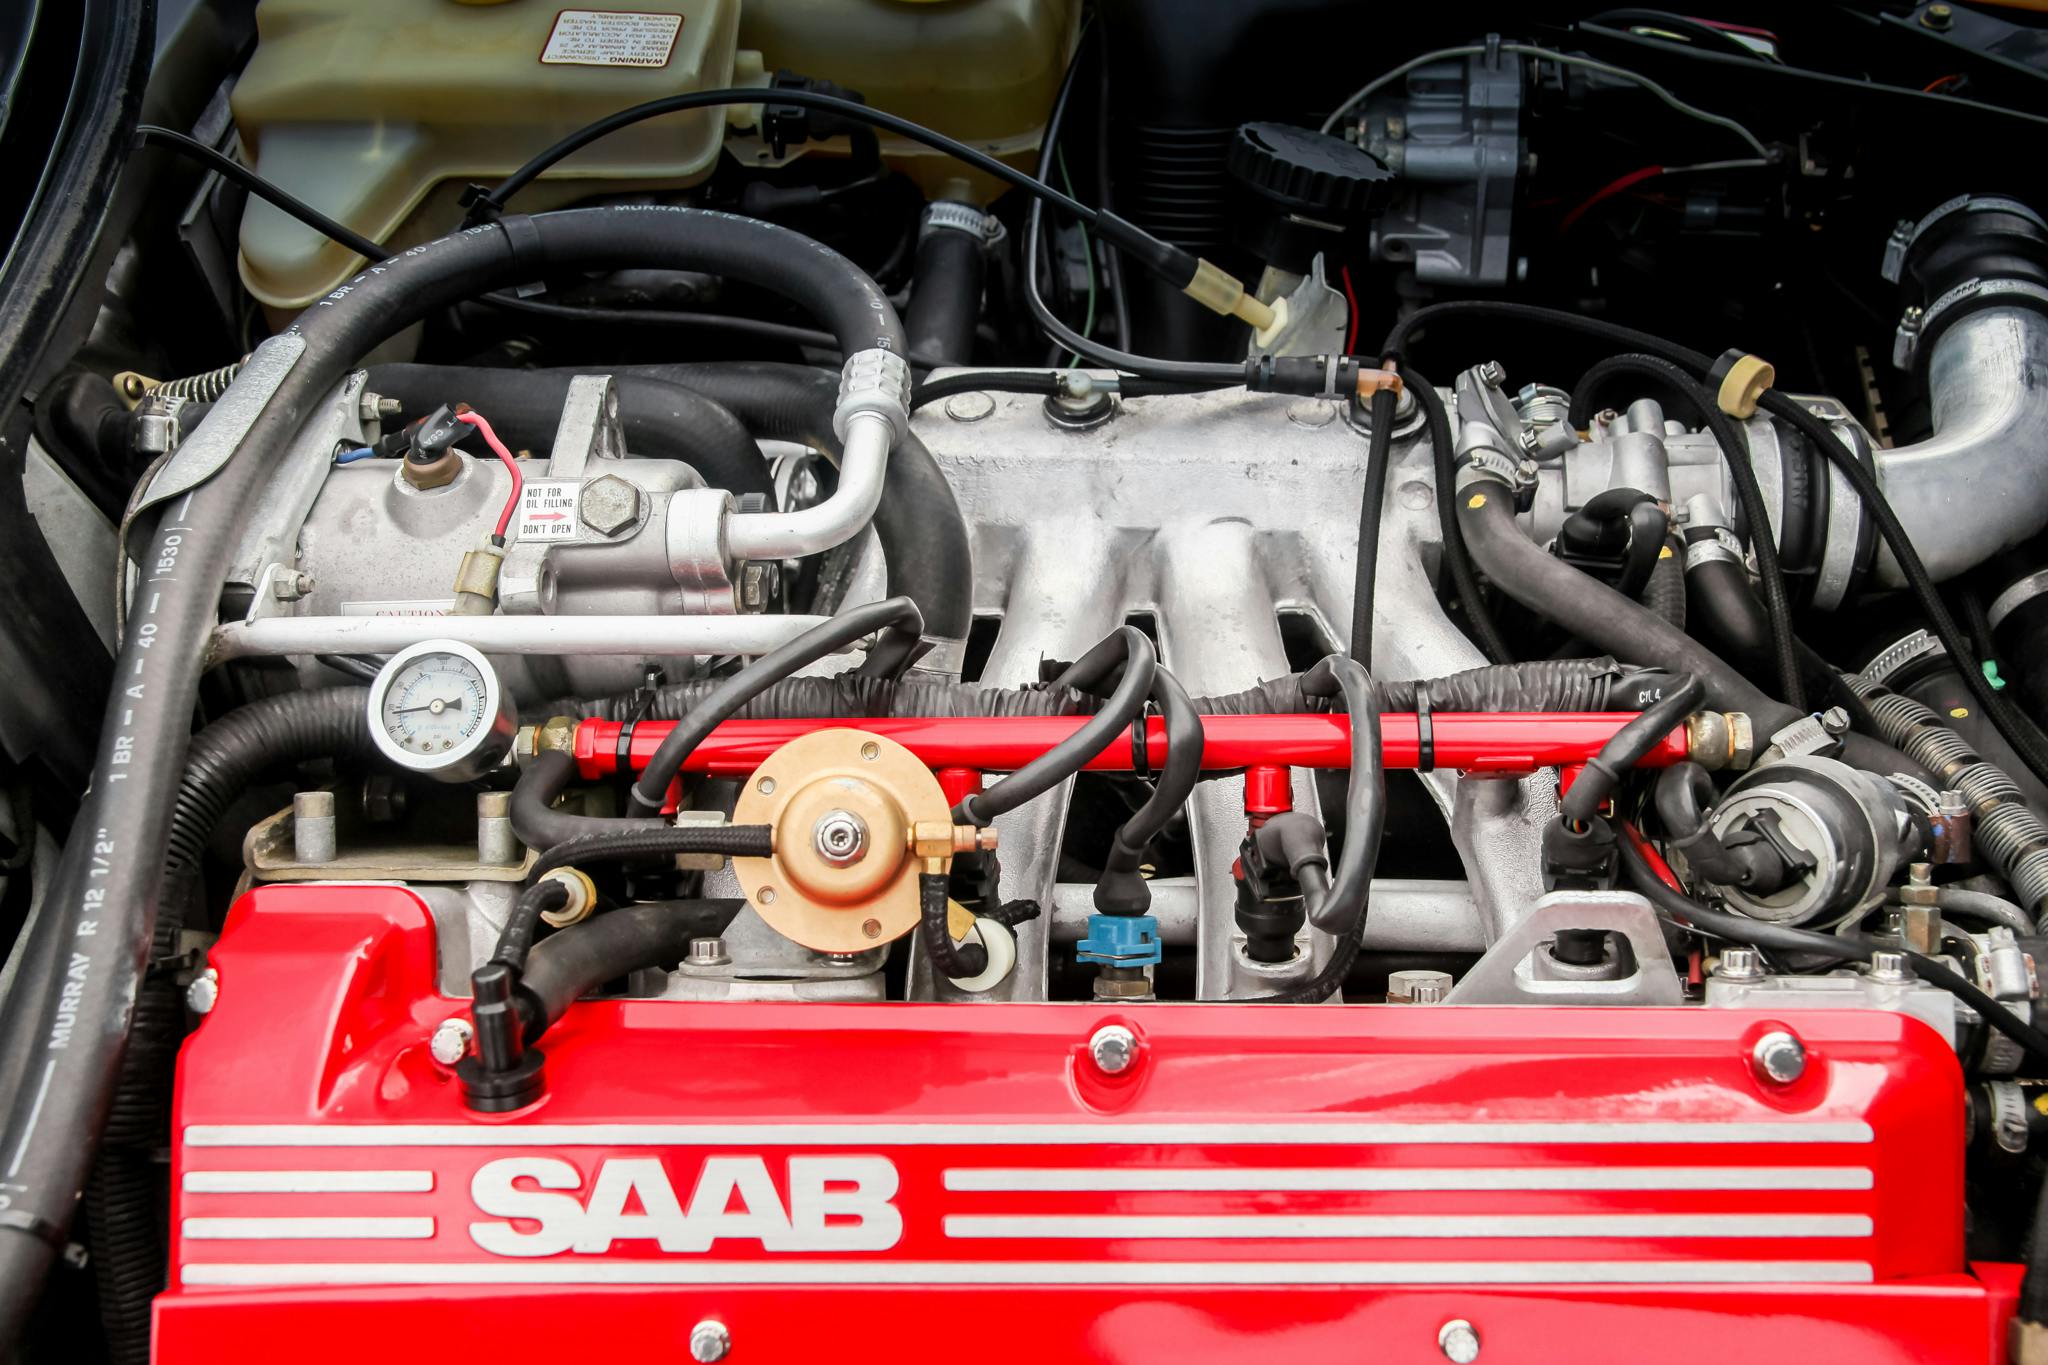 1991 Saab 900 SPG engine